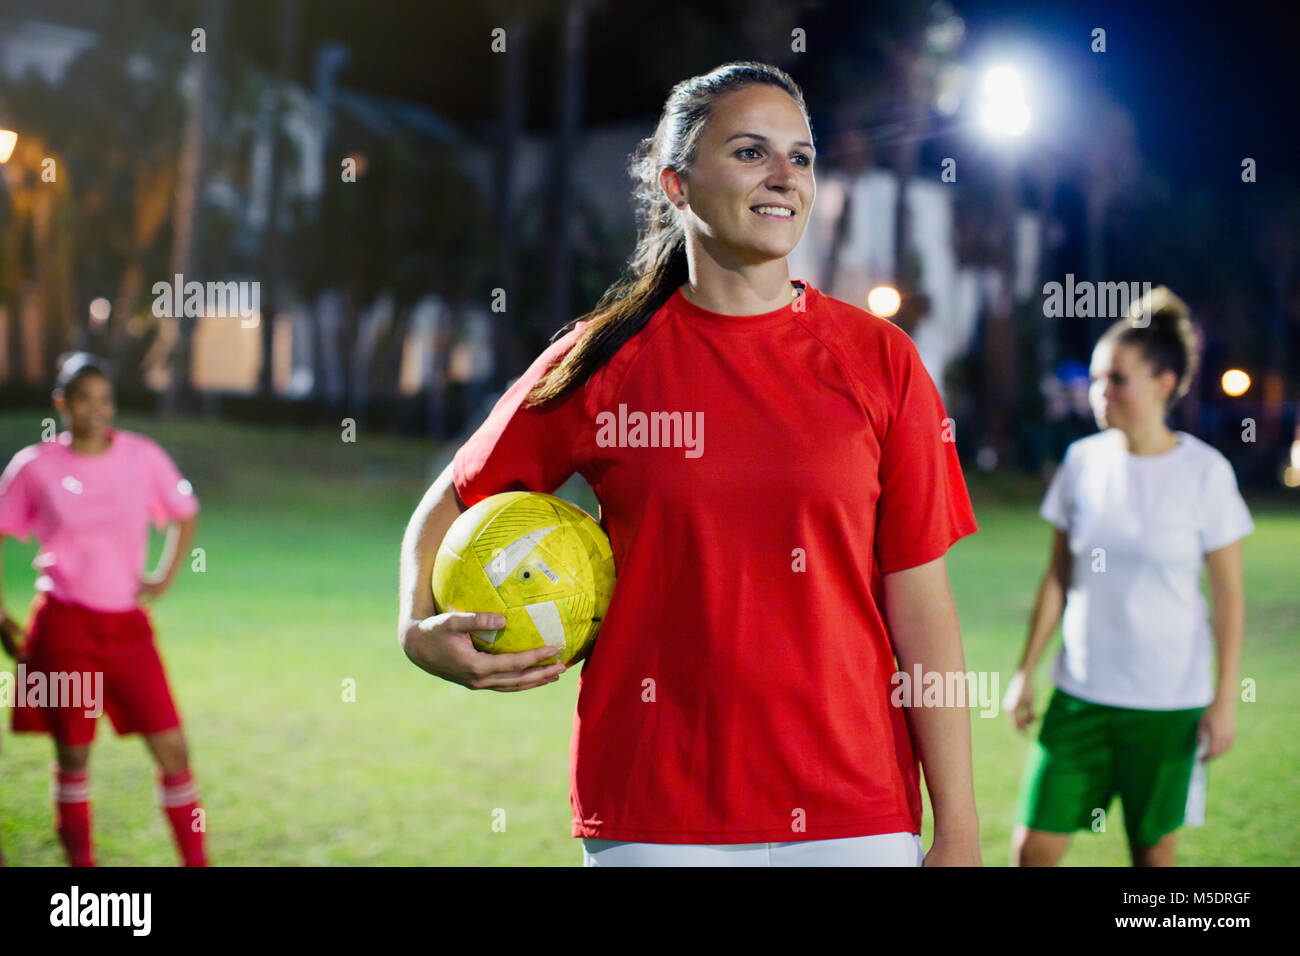 Portrait de confiance, souriante jeune femme joueur de football sur terrain de nuit Banque D'Images